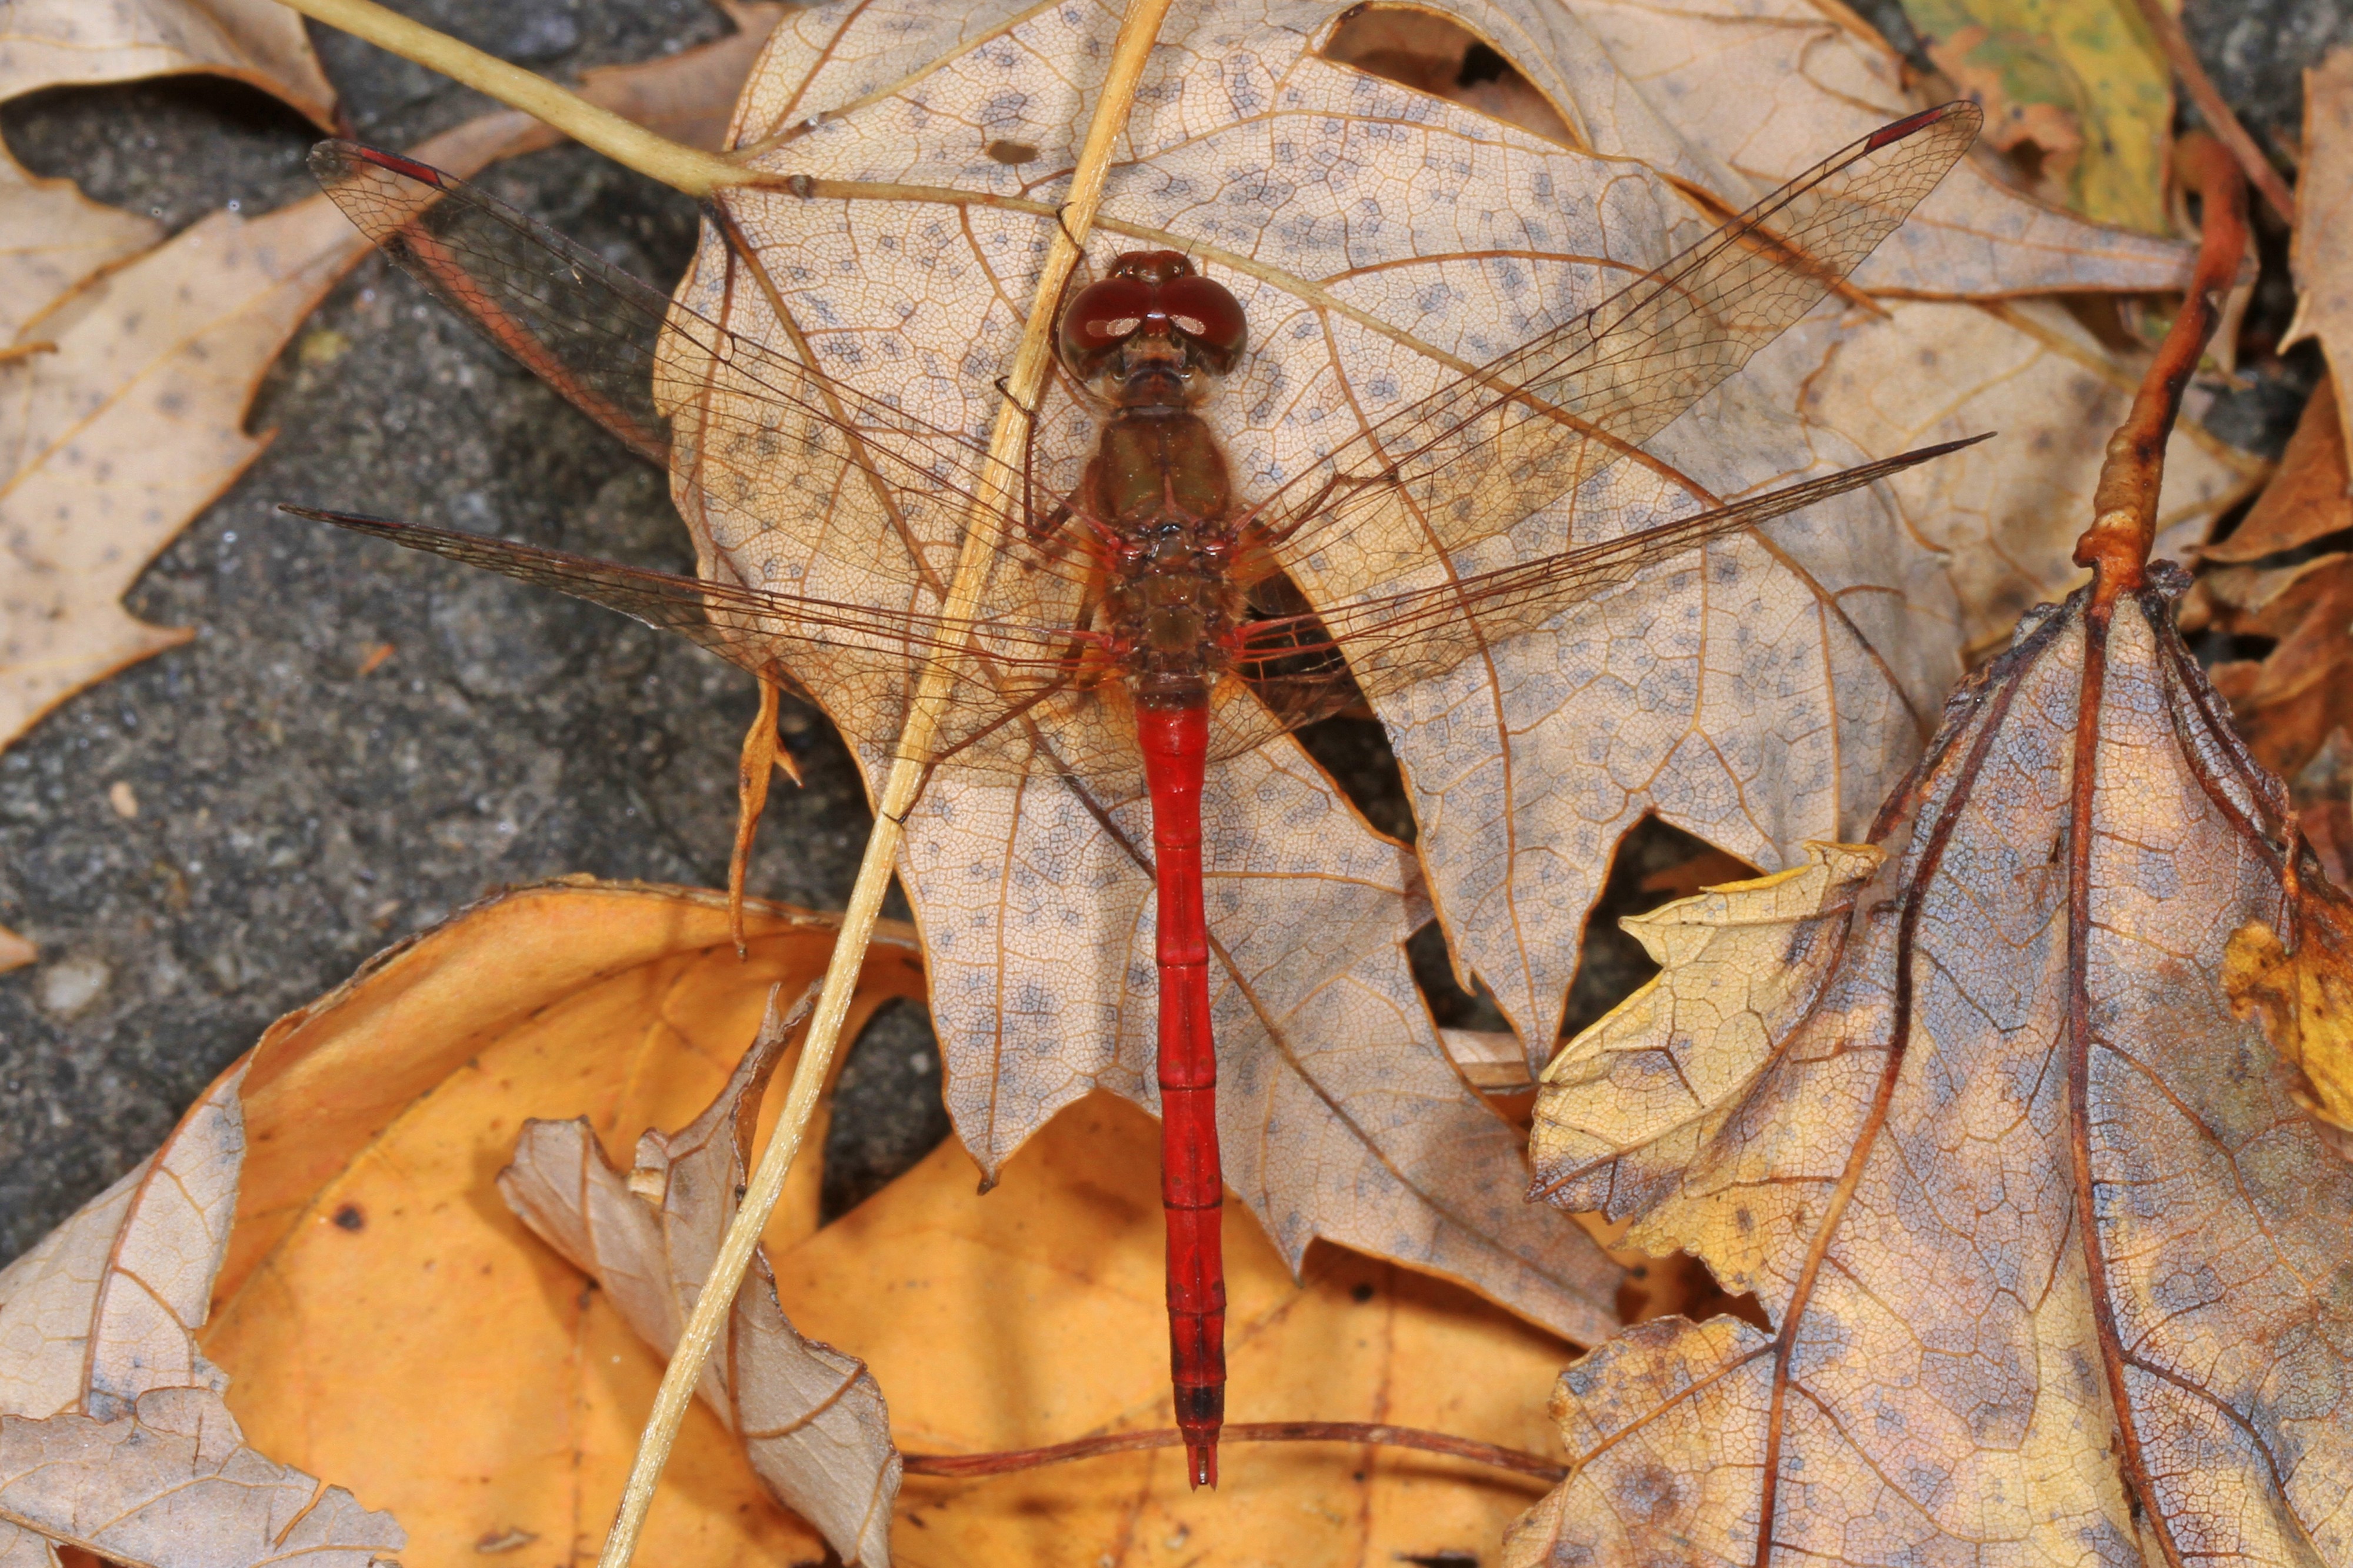 Autumn Meadowhawk - Sympetrum vicinum, Occoquan Regional Park, Lorton, Virginia